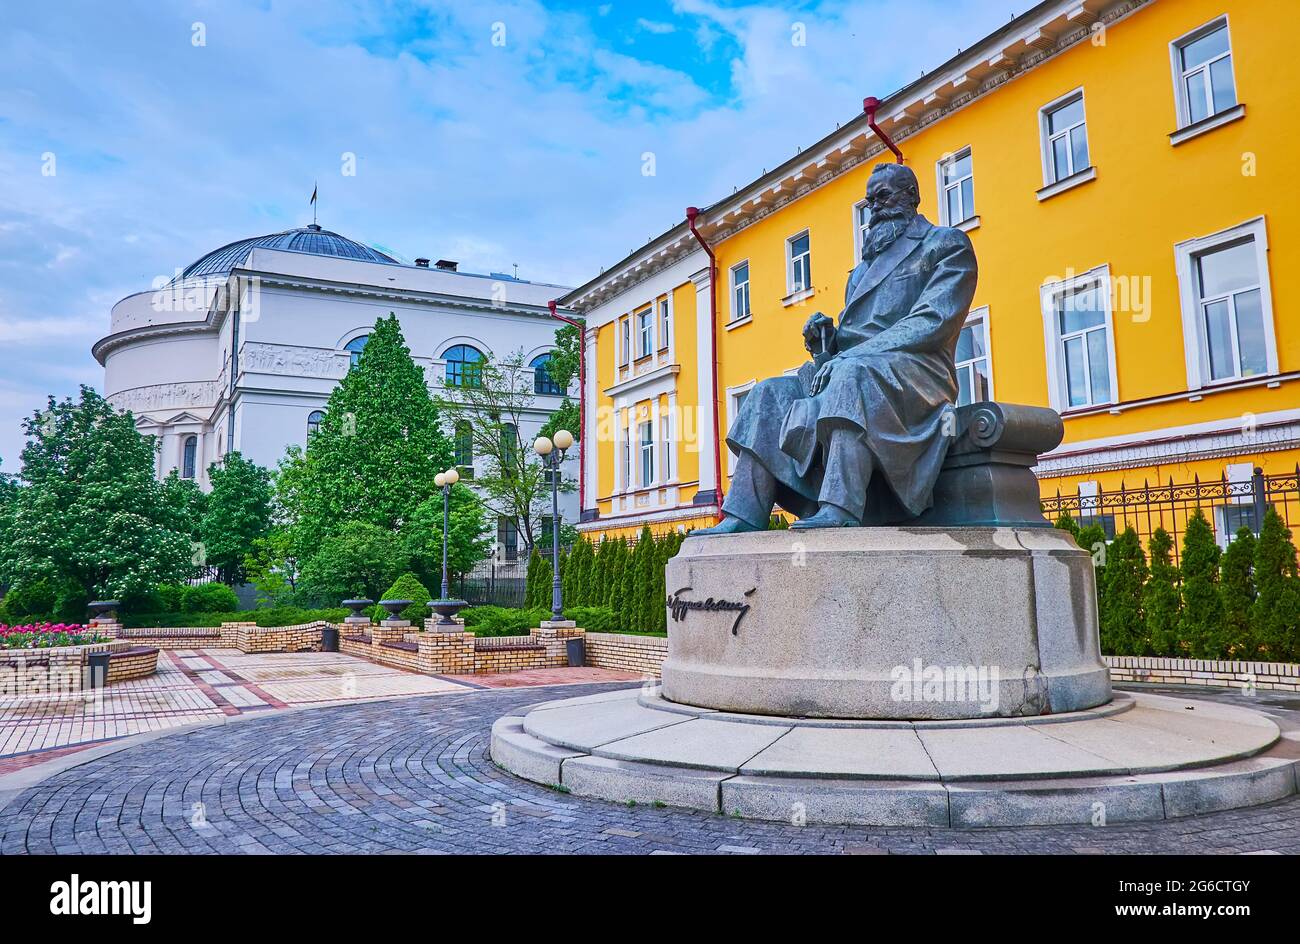 KIEW, UKRAINE - 18. MAI 2021: Das Denkmal für Mychailo Hrushevsky, angrenzend an das Gebäude der Taras Schewtschenko Universität und das Lehrerhaus (f Stockfoto